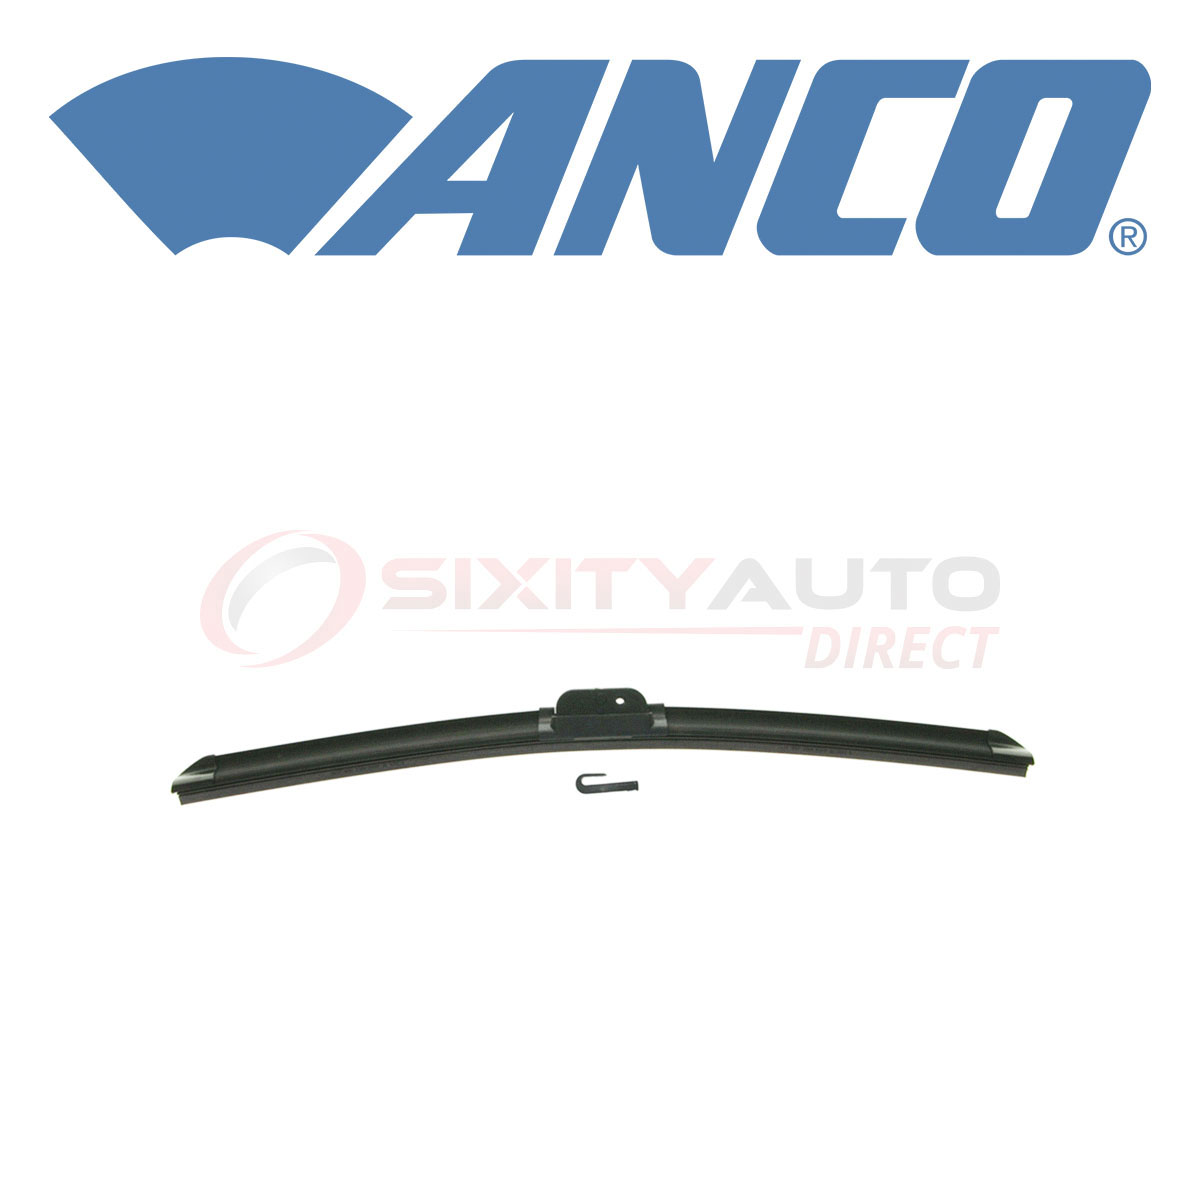 ANCO Countour Windshield Wiper Blade for 2006-2016 Kia Sedona 3.3L 3.5L 3.8L kd | eBay 2016 Kia Sedona Rear Wiper Blade Replacement